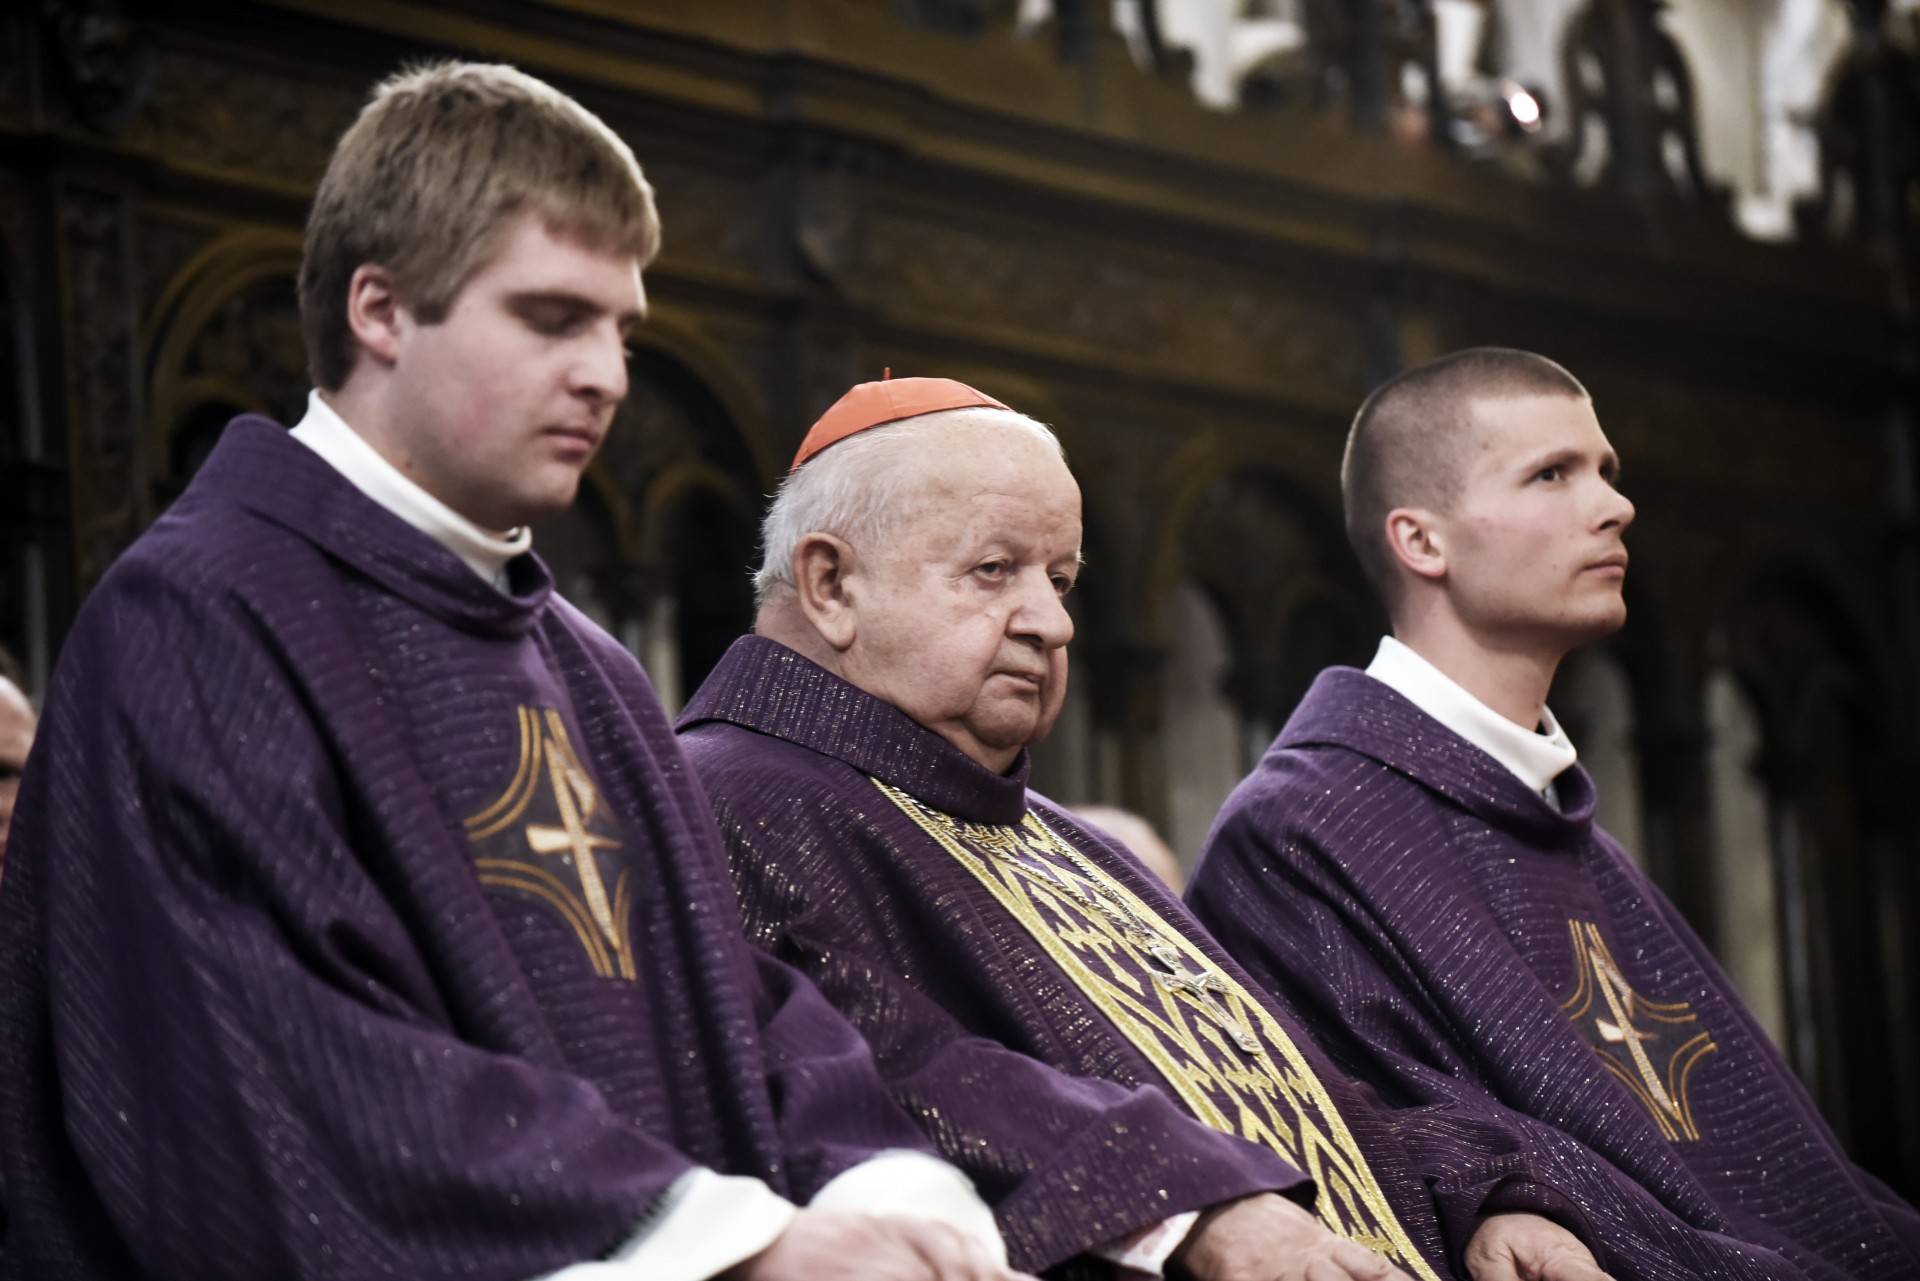 Po publikacjach na temat Jana Pawła II. Kardynał Dziwisz wydał oświadczenie